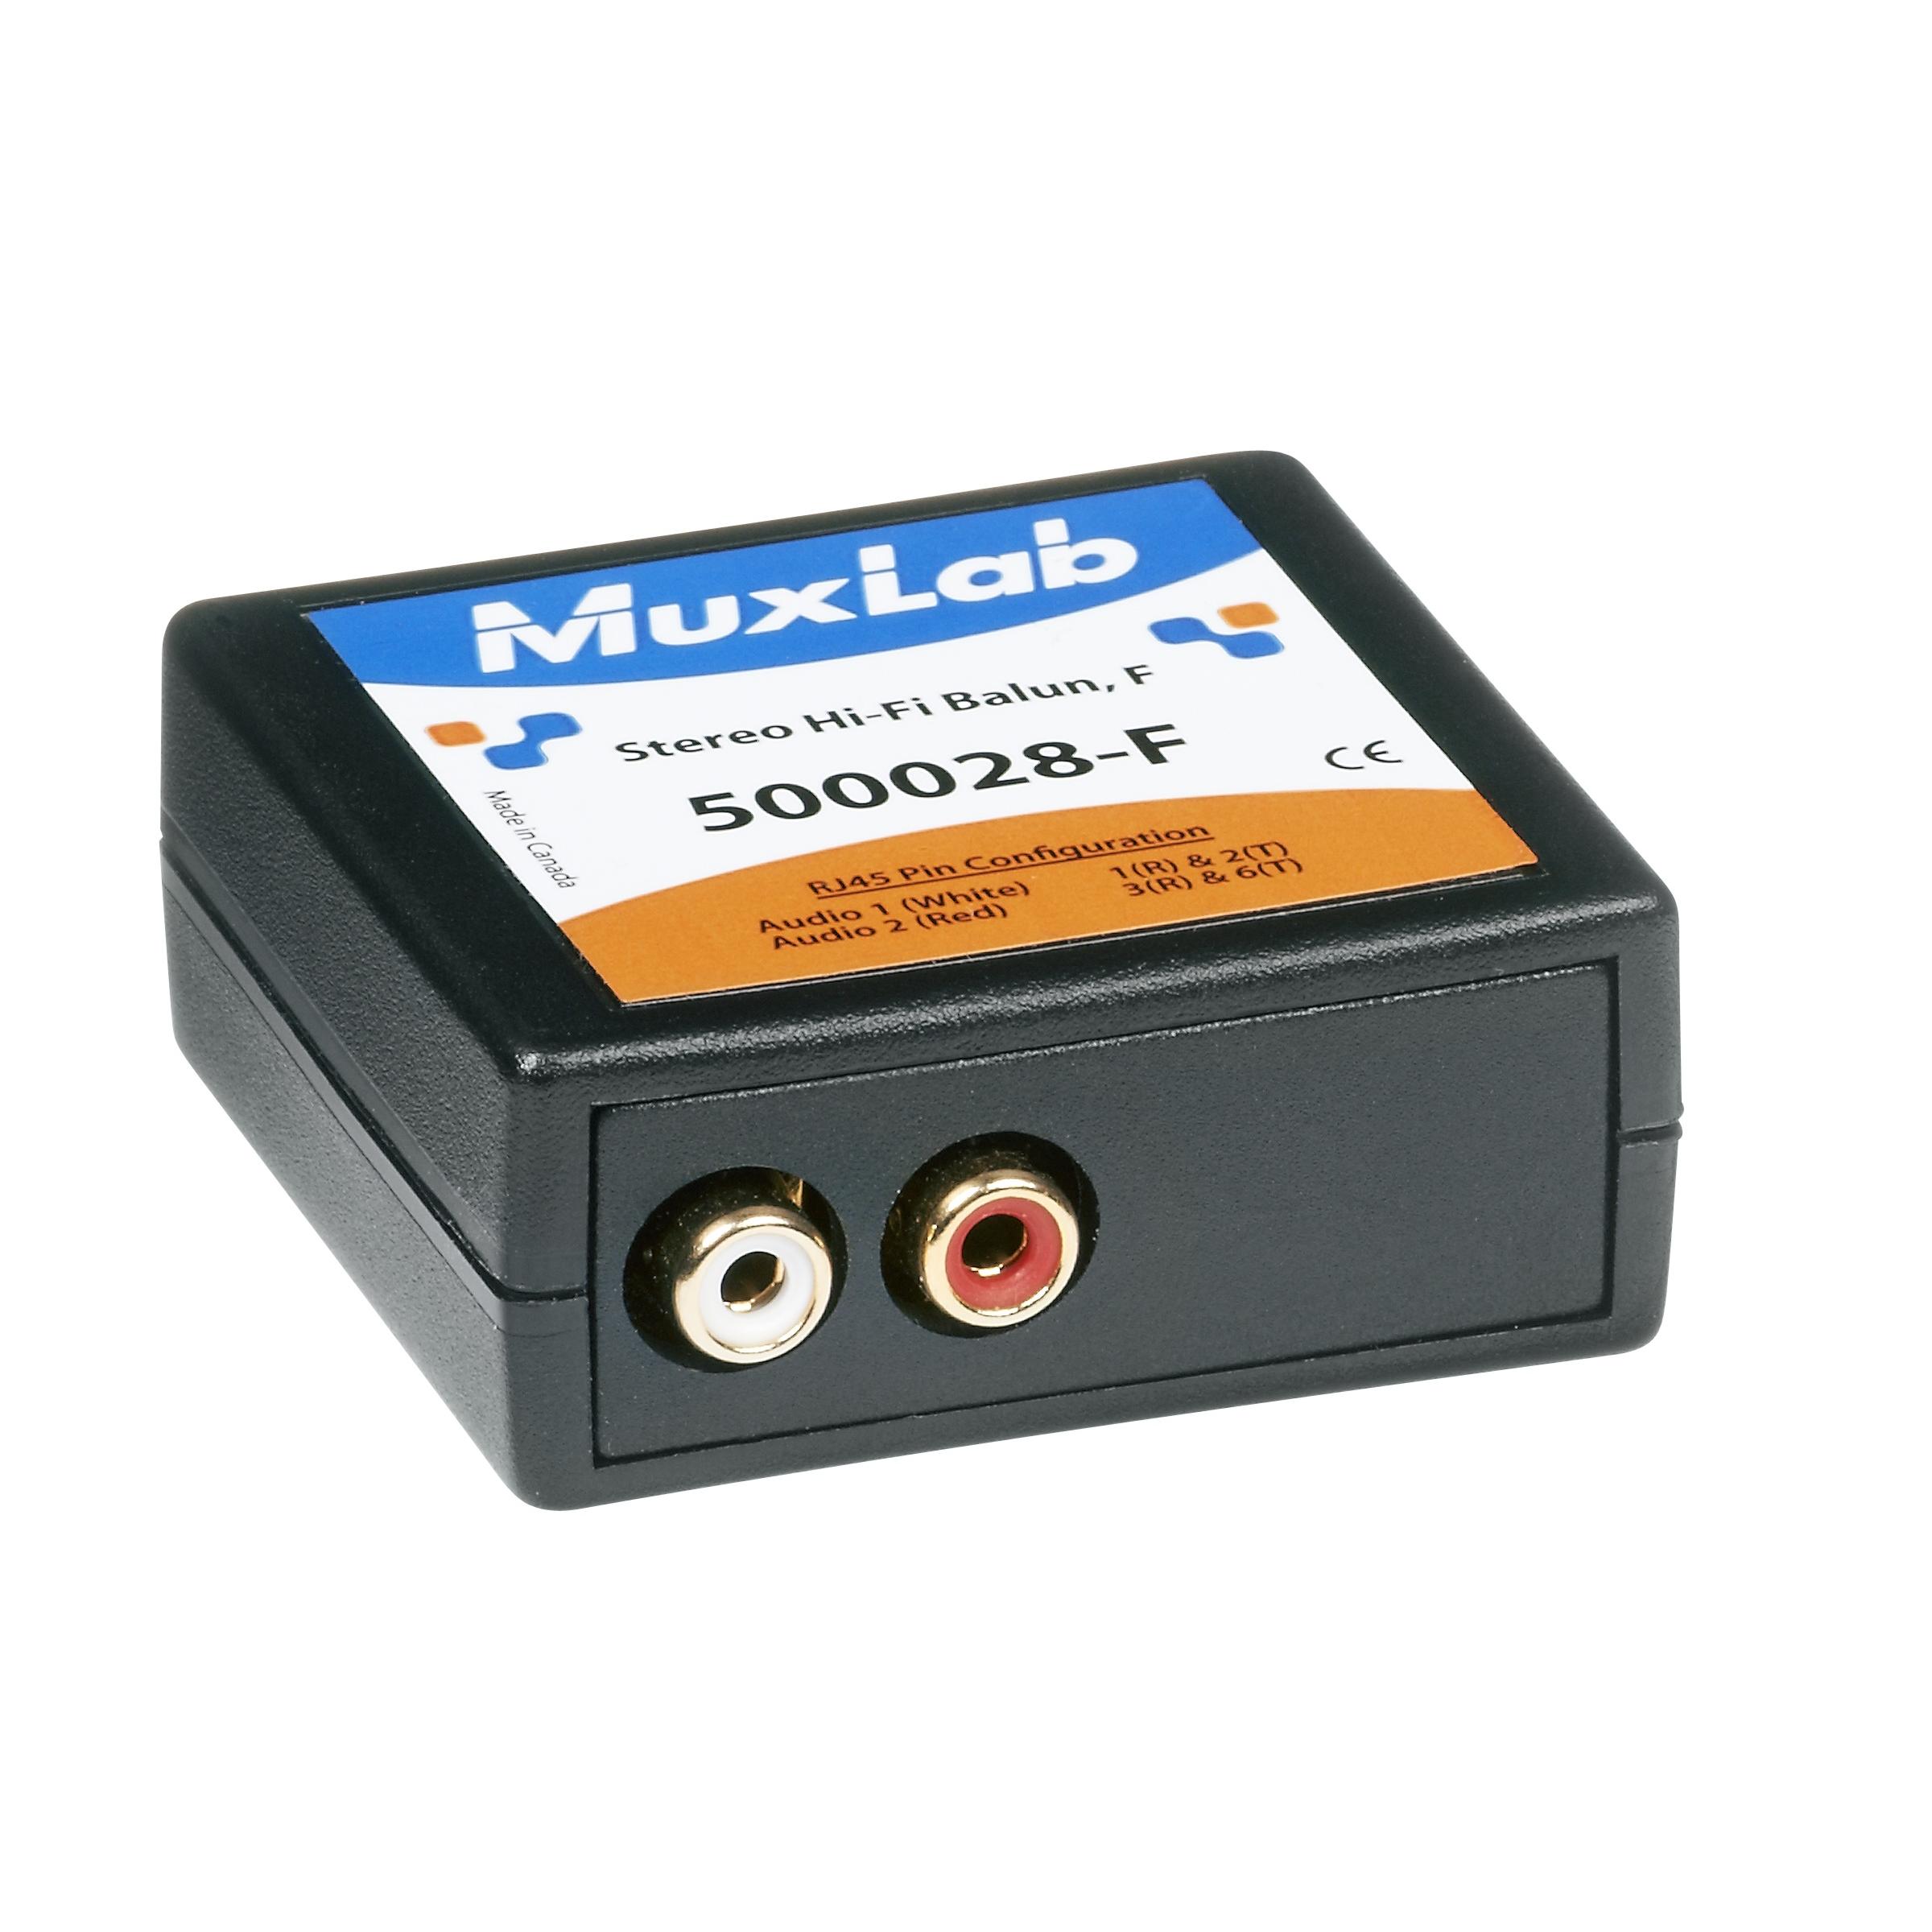 Muxlab 500028-F